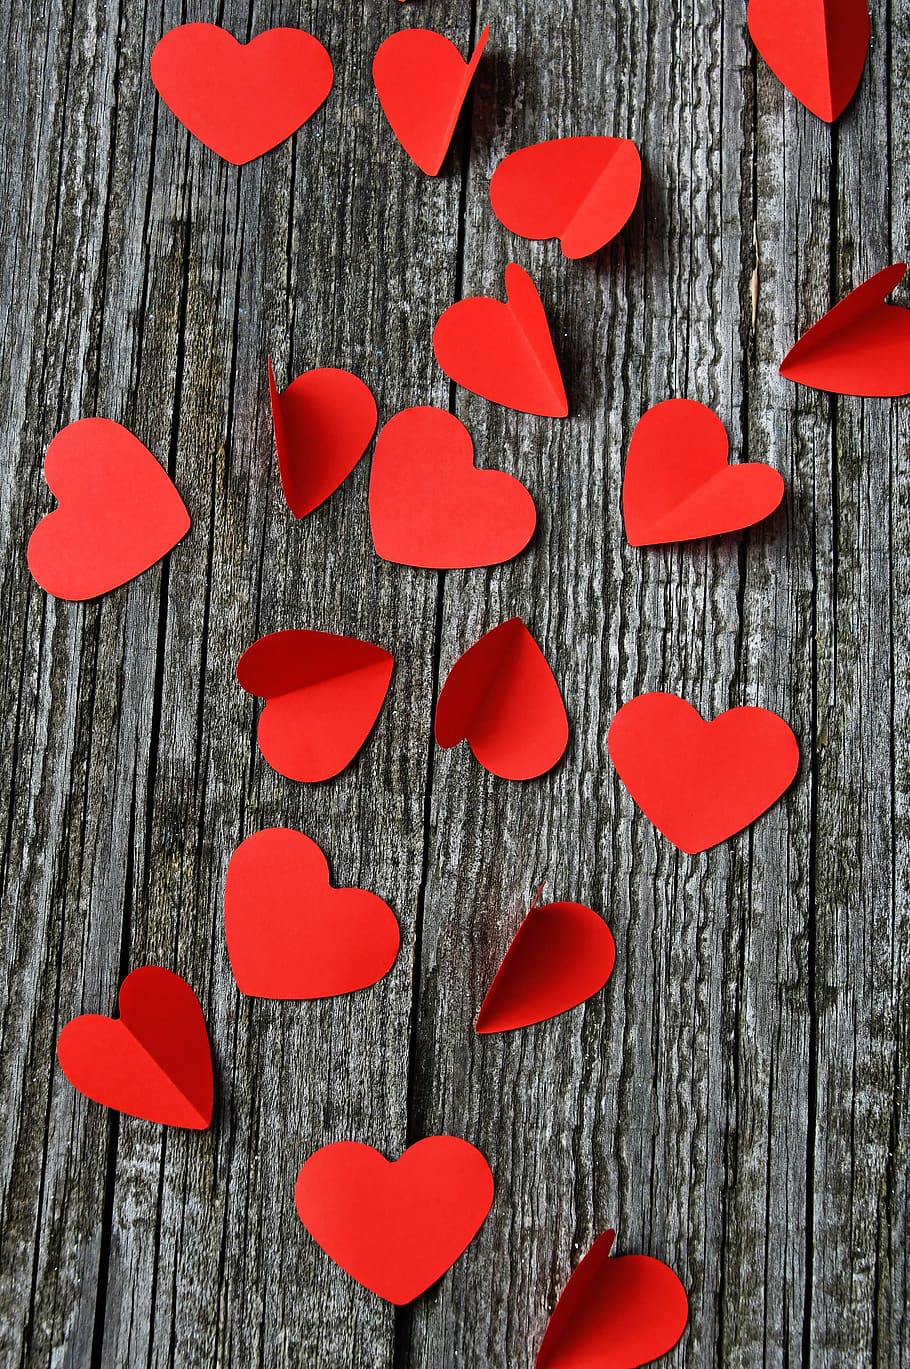 namorados, dia dos namorados, amor, vermelho, coração, android Vetor, madeira - material, diretamente acima, natureza morta, mesa